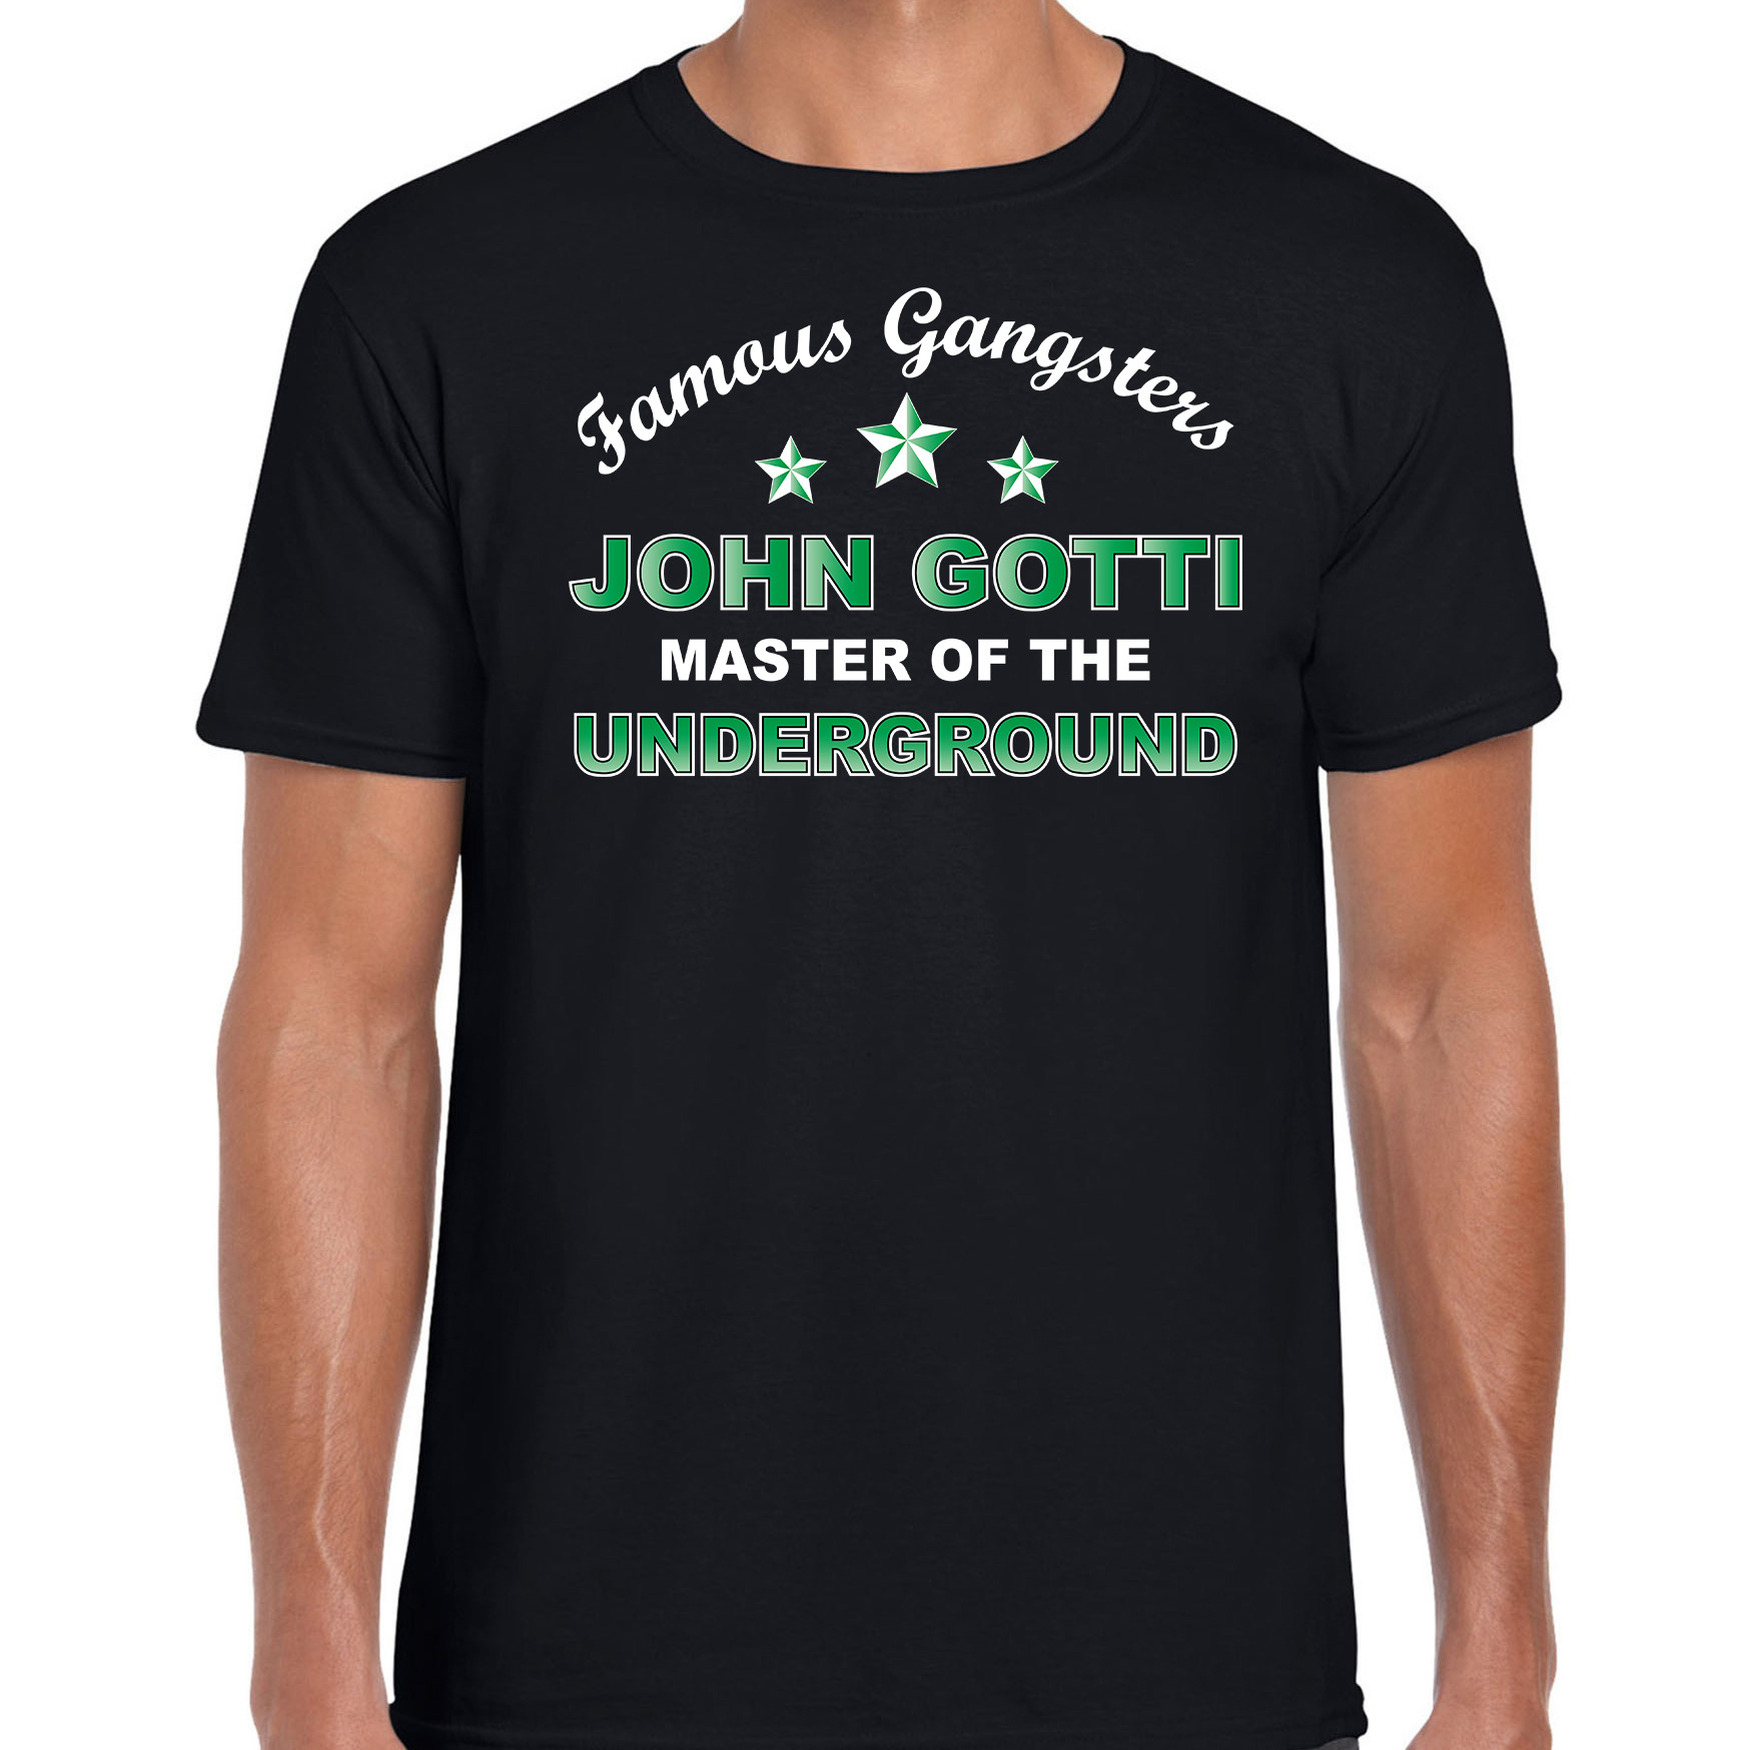 Famous gangsters John Gotti tekst verkleed t-shirt-kostuum zwart heren